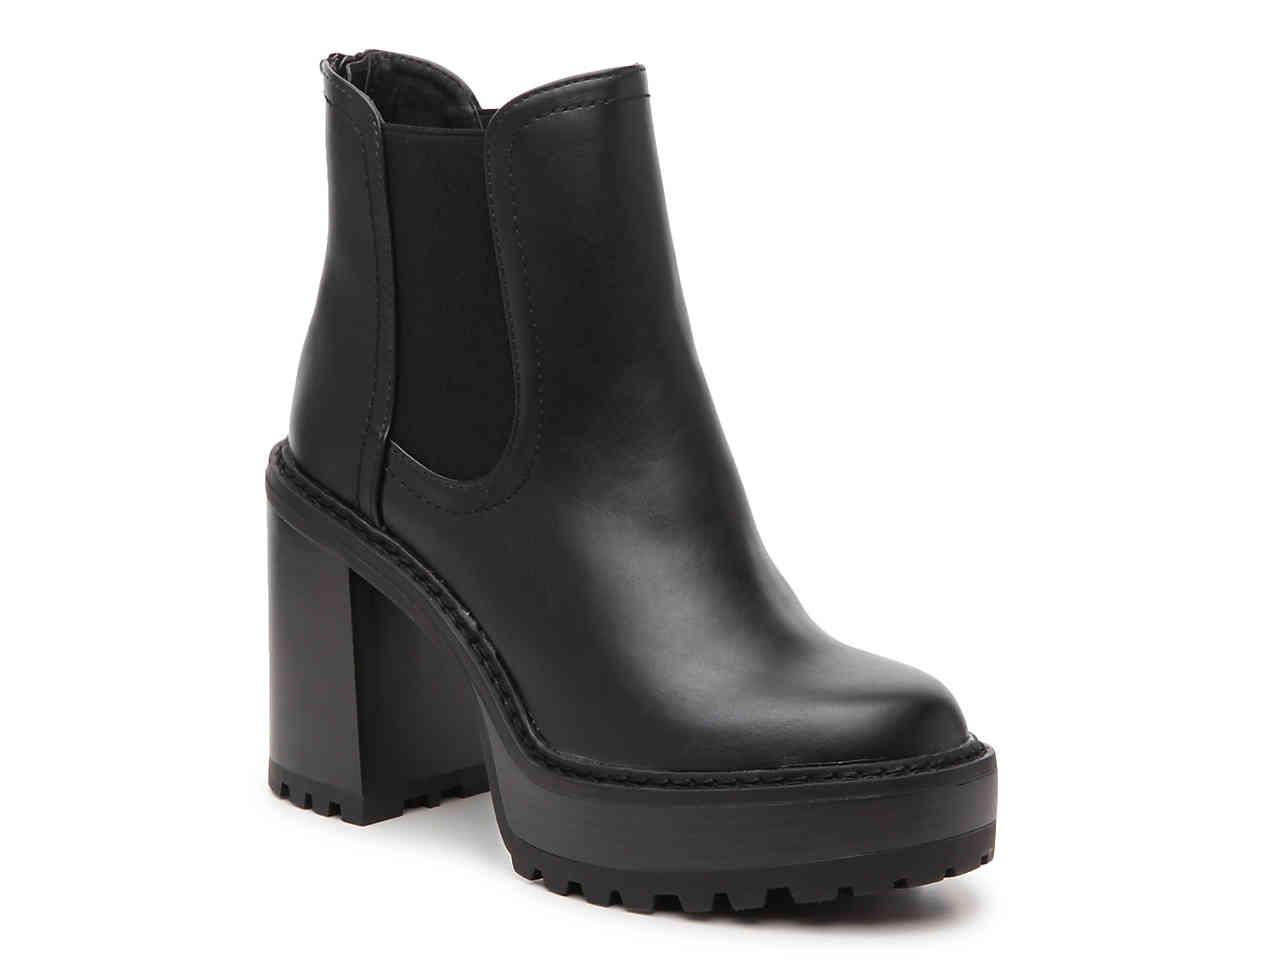 Madden Girl Kamora Platform Chelsea Boot in Black - Lyst